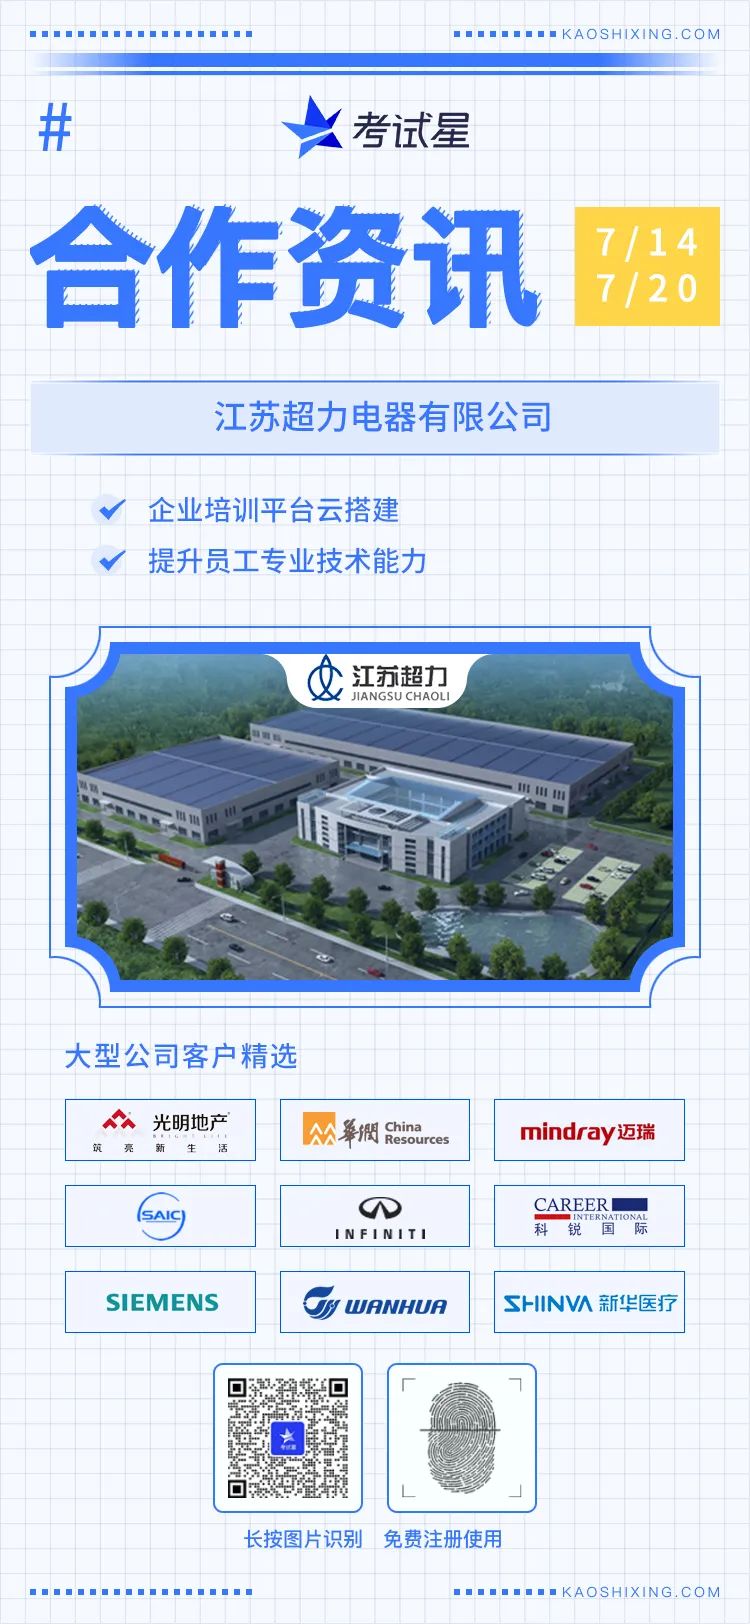 江苏超力电器有限公司-考试星企业培训平台